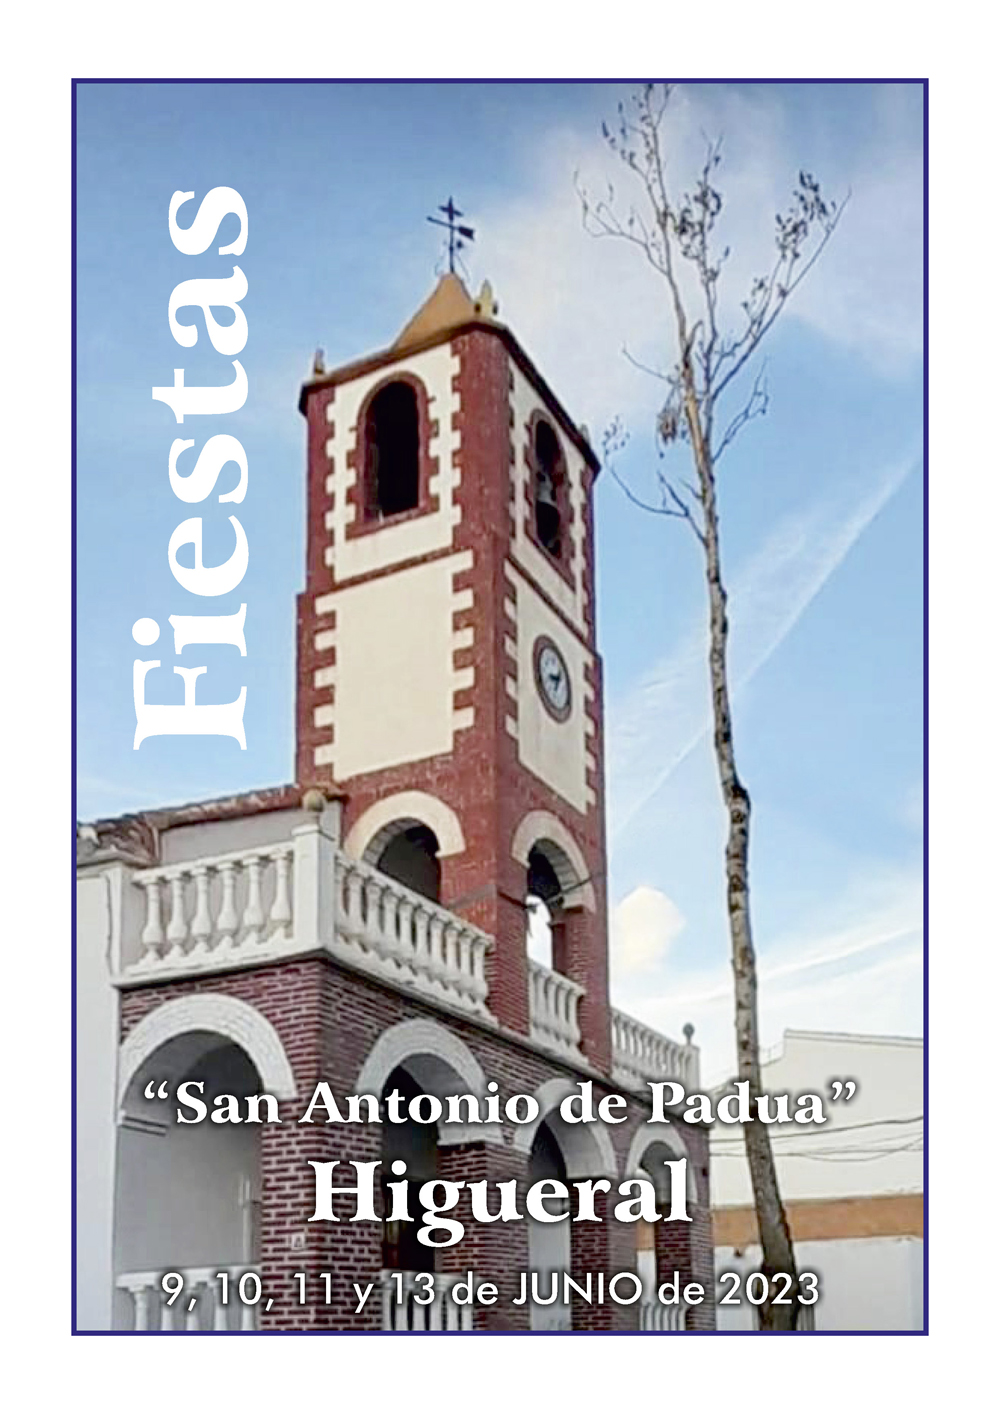 Imagen del Cartel de las Fiestas en Honor a San Antonio de Padua en Higueral 2023. Imagen de la Iglesia de San Antonio al fondo.